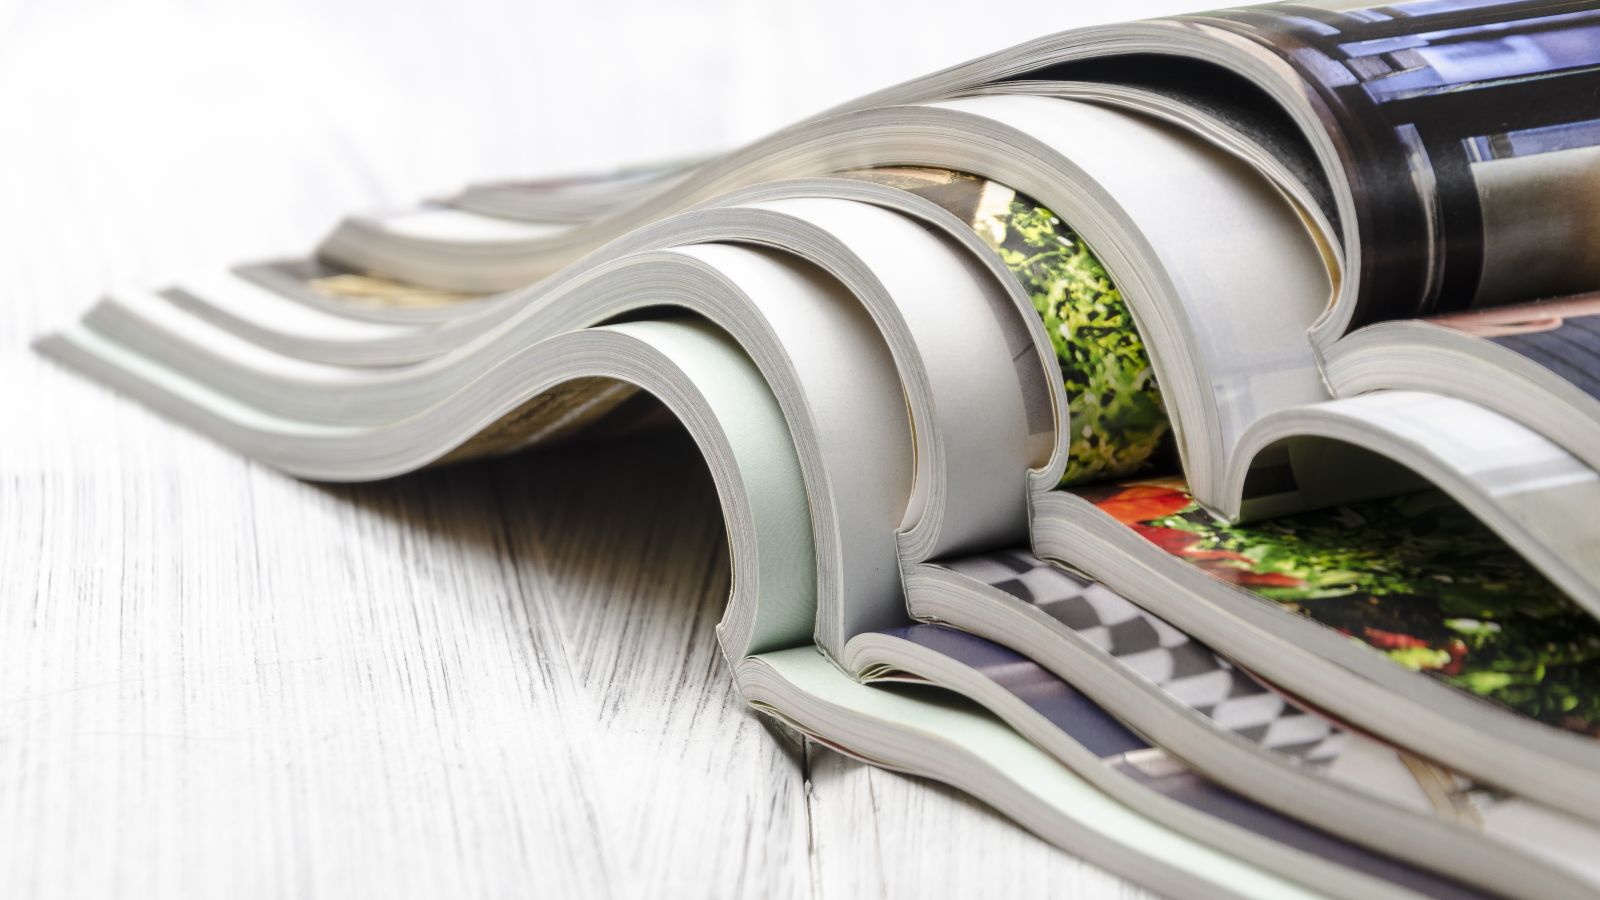 Diese Bild zeigt mehrere aufgeschlagene, ineinander gelegte Magazine.